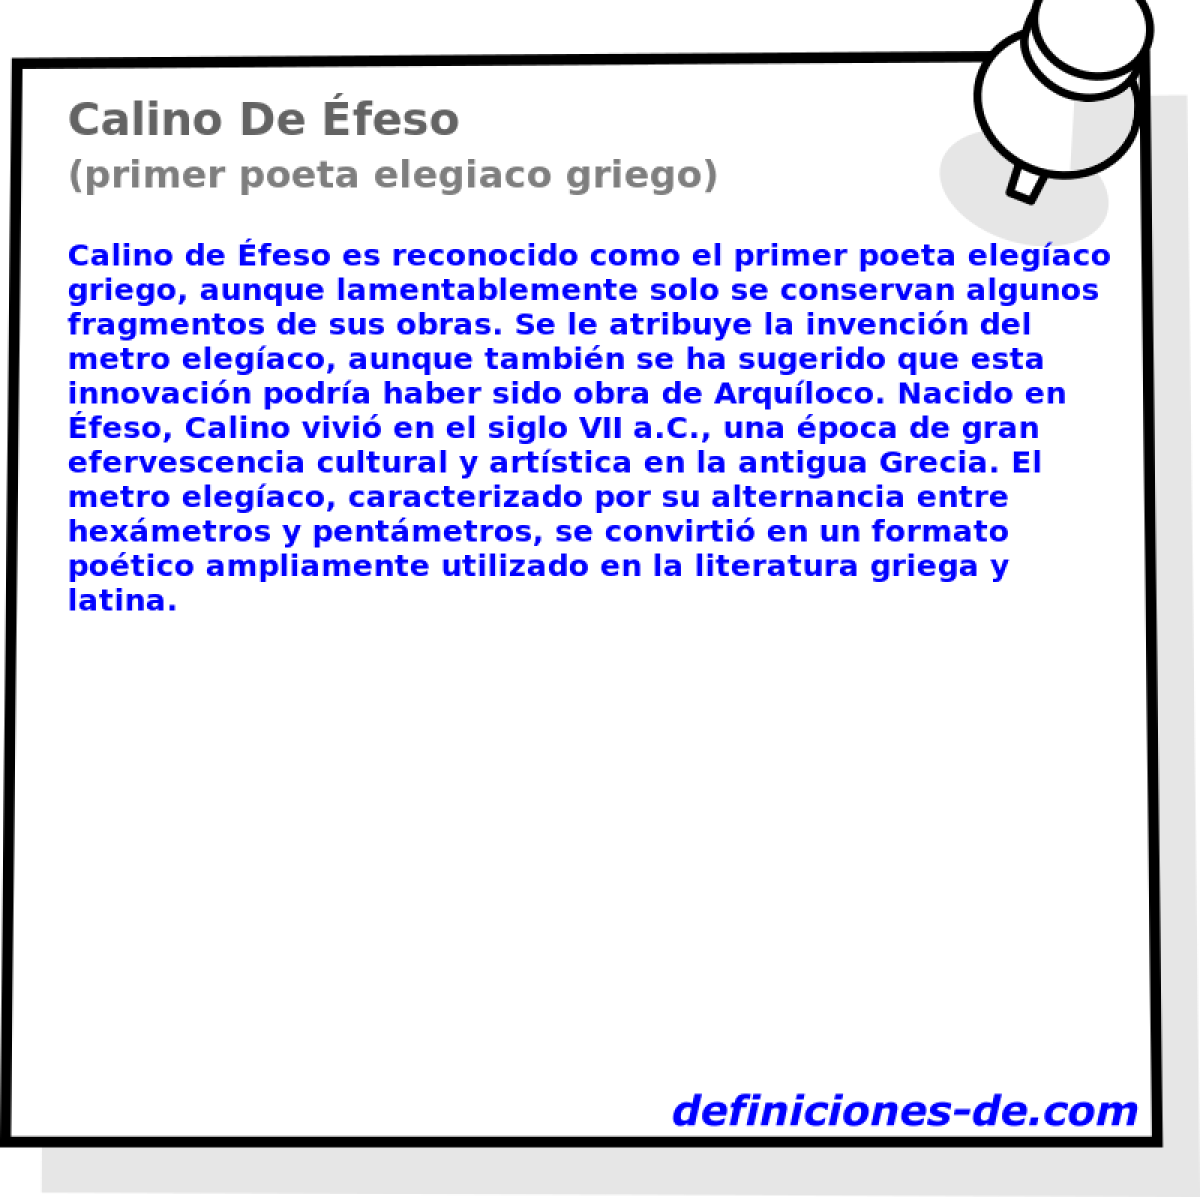 Calino De feso (primer poeta elegiaco griego)